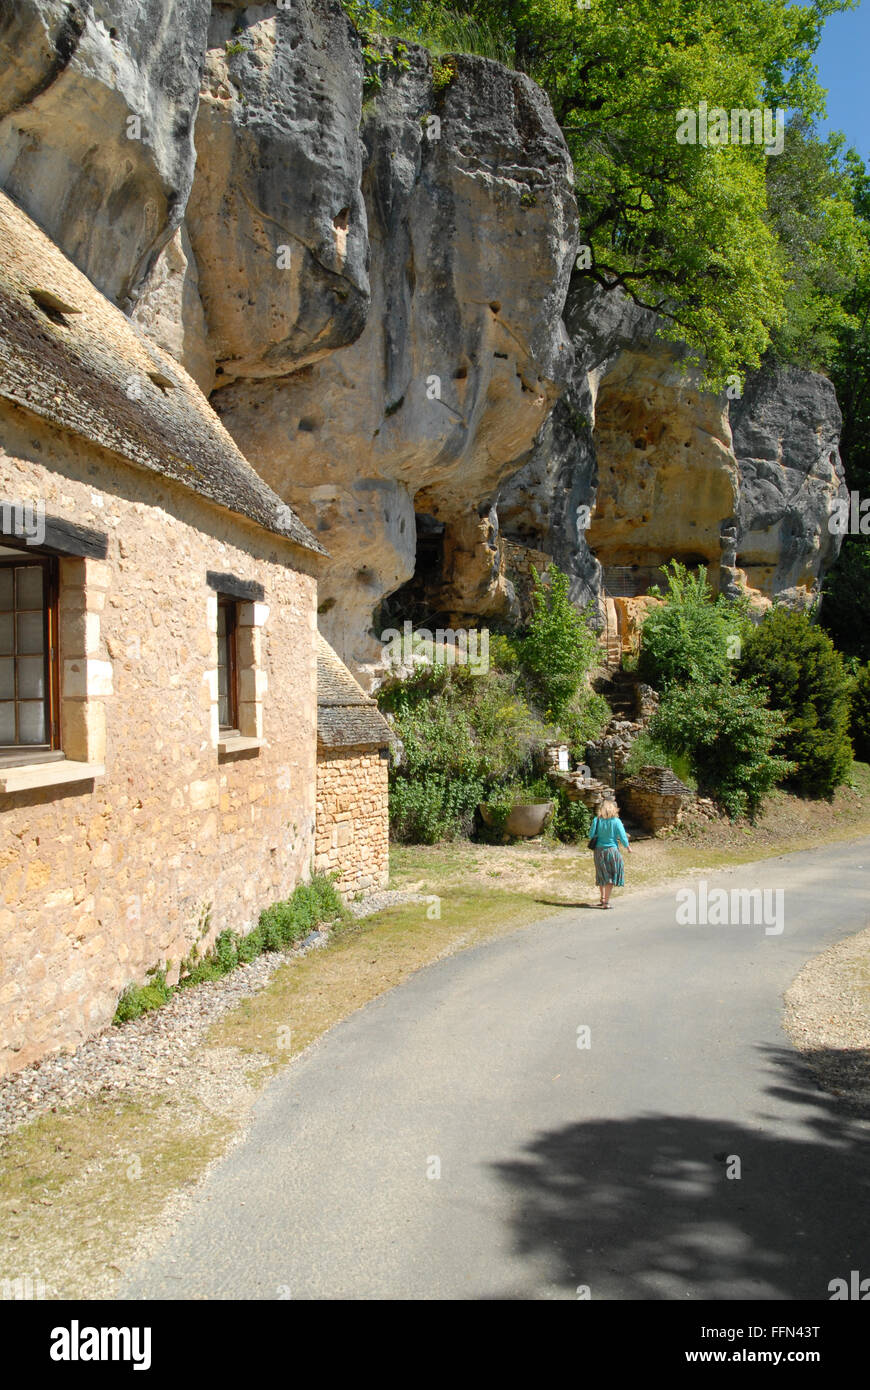 St-Circ, Dordogne, l'emplacement de la Grotte du sorcier. Il y a des vestiges d'une forteresse médiévale dans la falaise calcaire adjacent. Banque D'Images